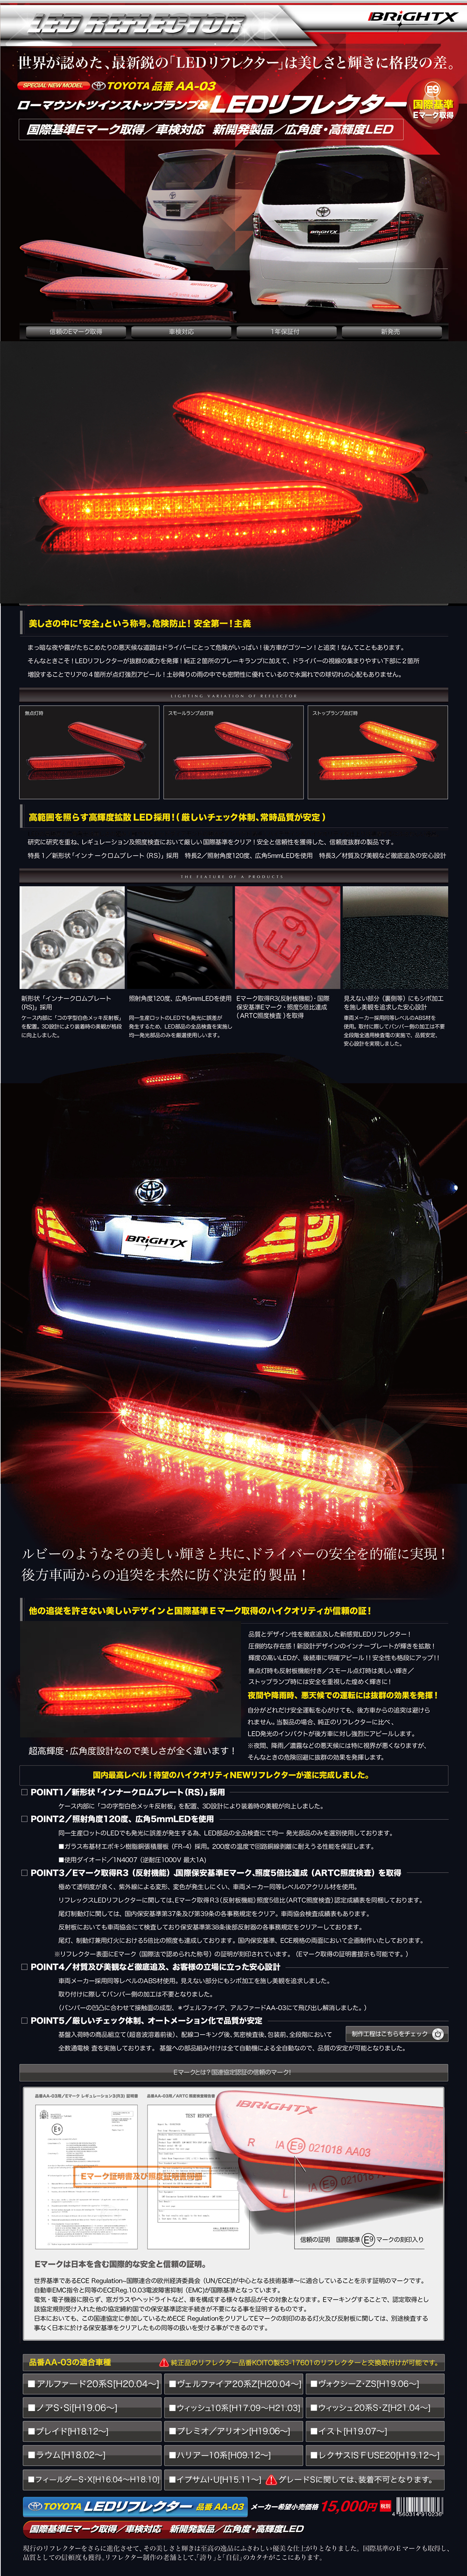 本物保証低価当日発送 BRiGHTX社製ブライトX トヨタ アリオン ALLION プレミオ リフレクター LED 車検対応 送料無料 1年保証 テールライト